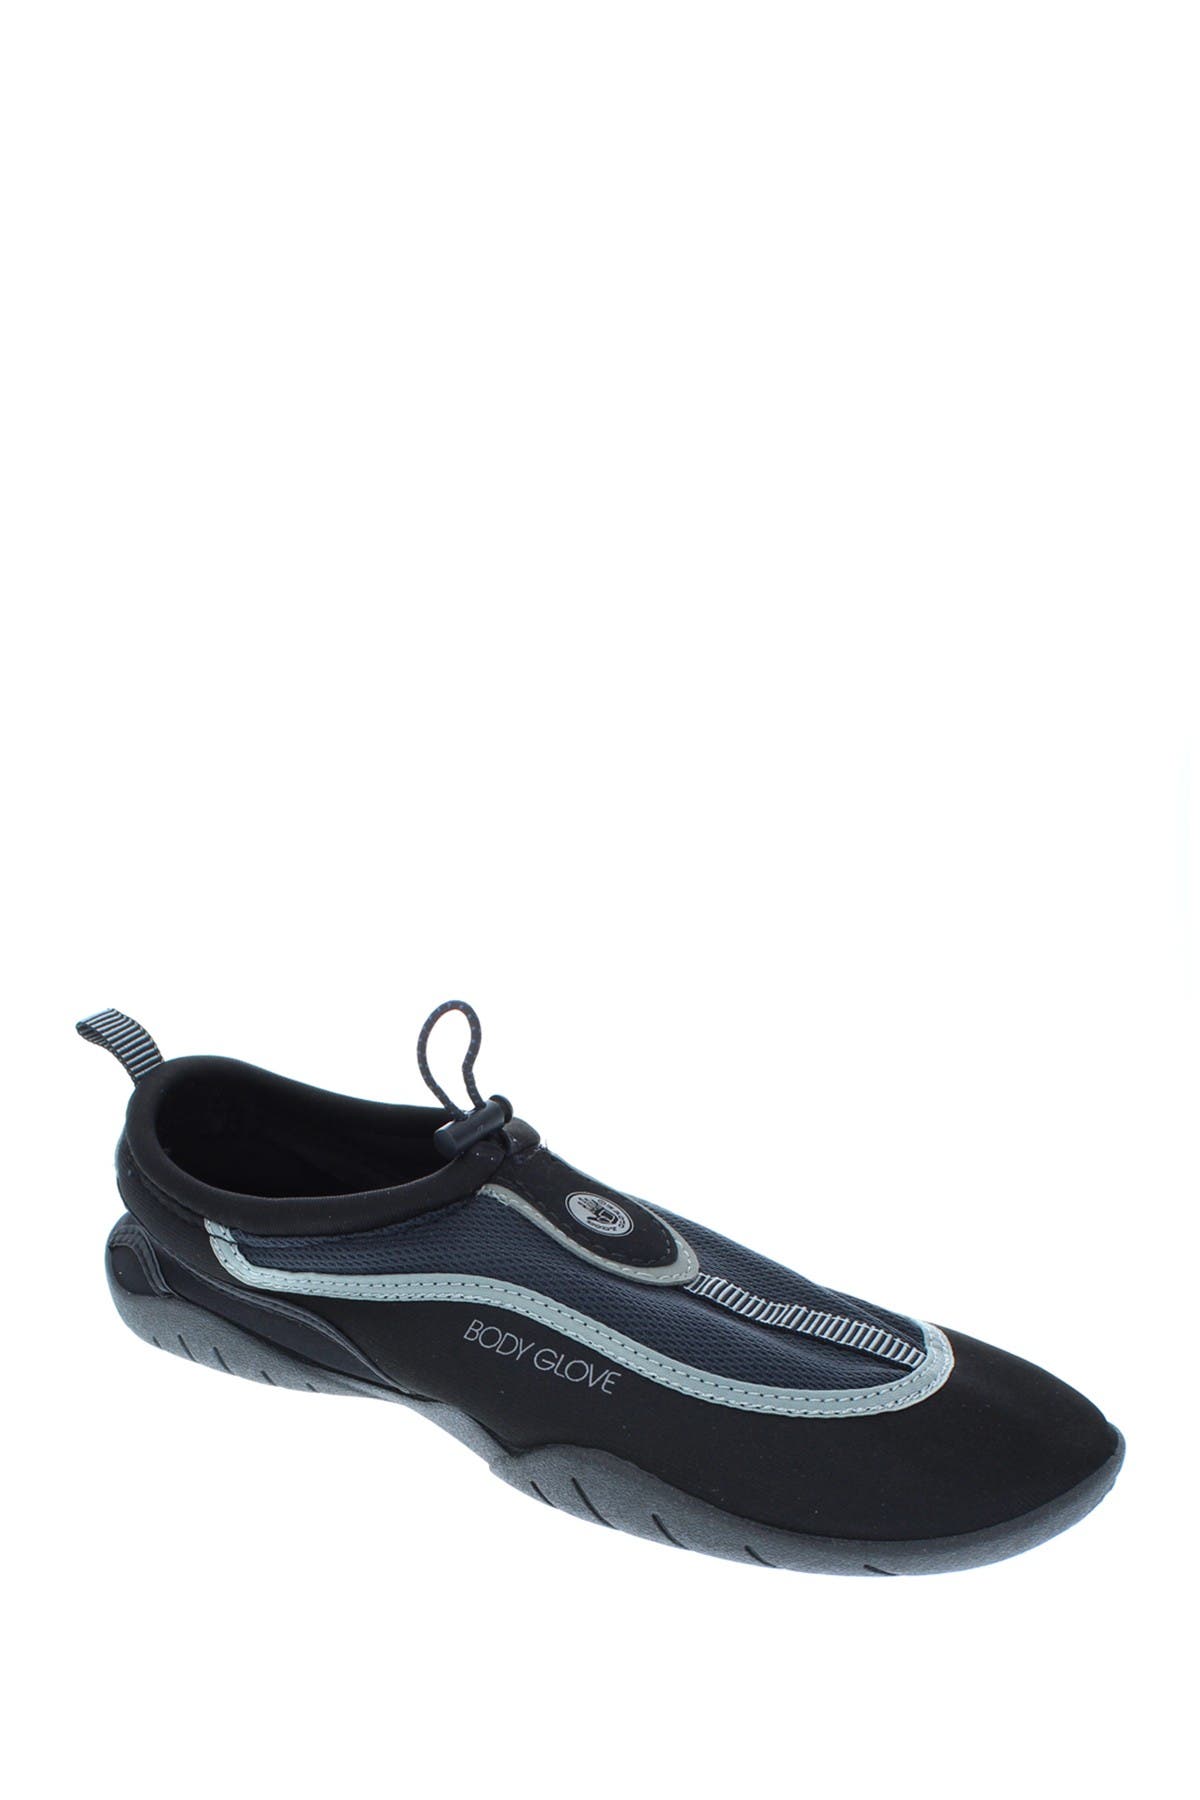 body glove riptide iii women's water shoes